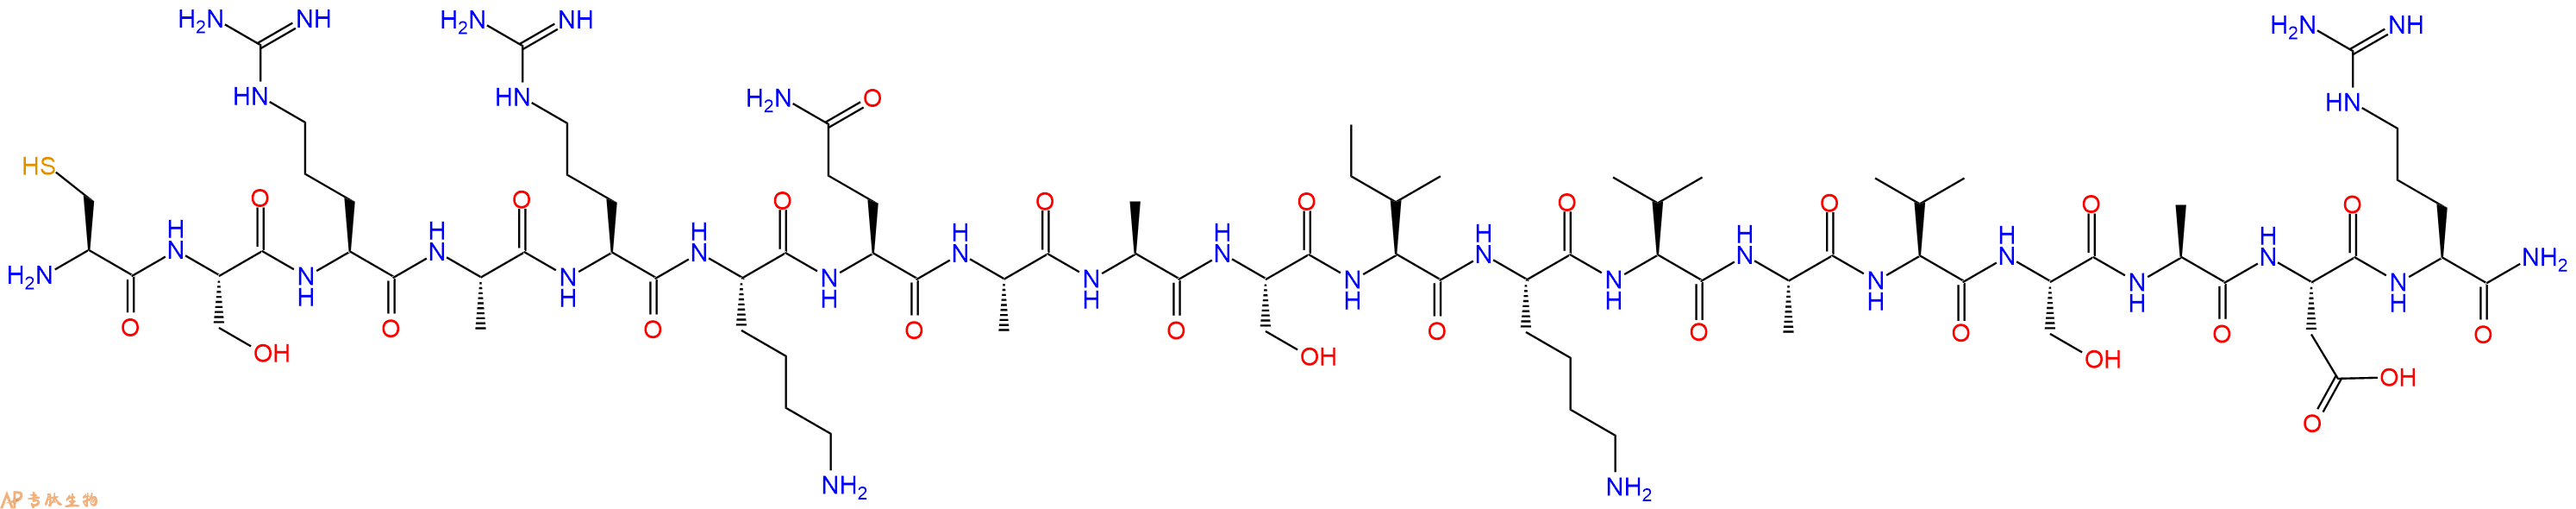 专肽生物产品Laminin a1 (2110 - 2127) amide, mouse